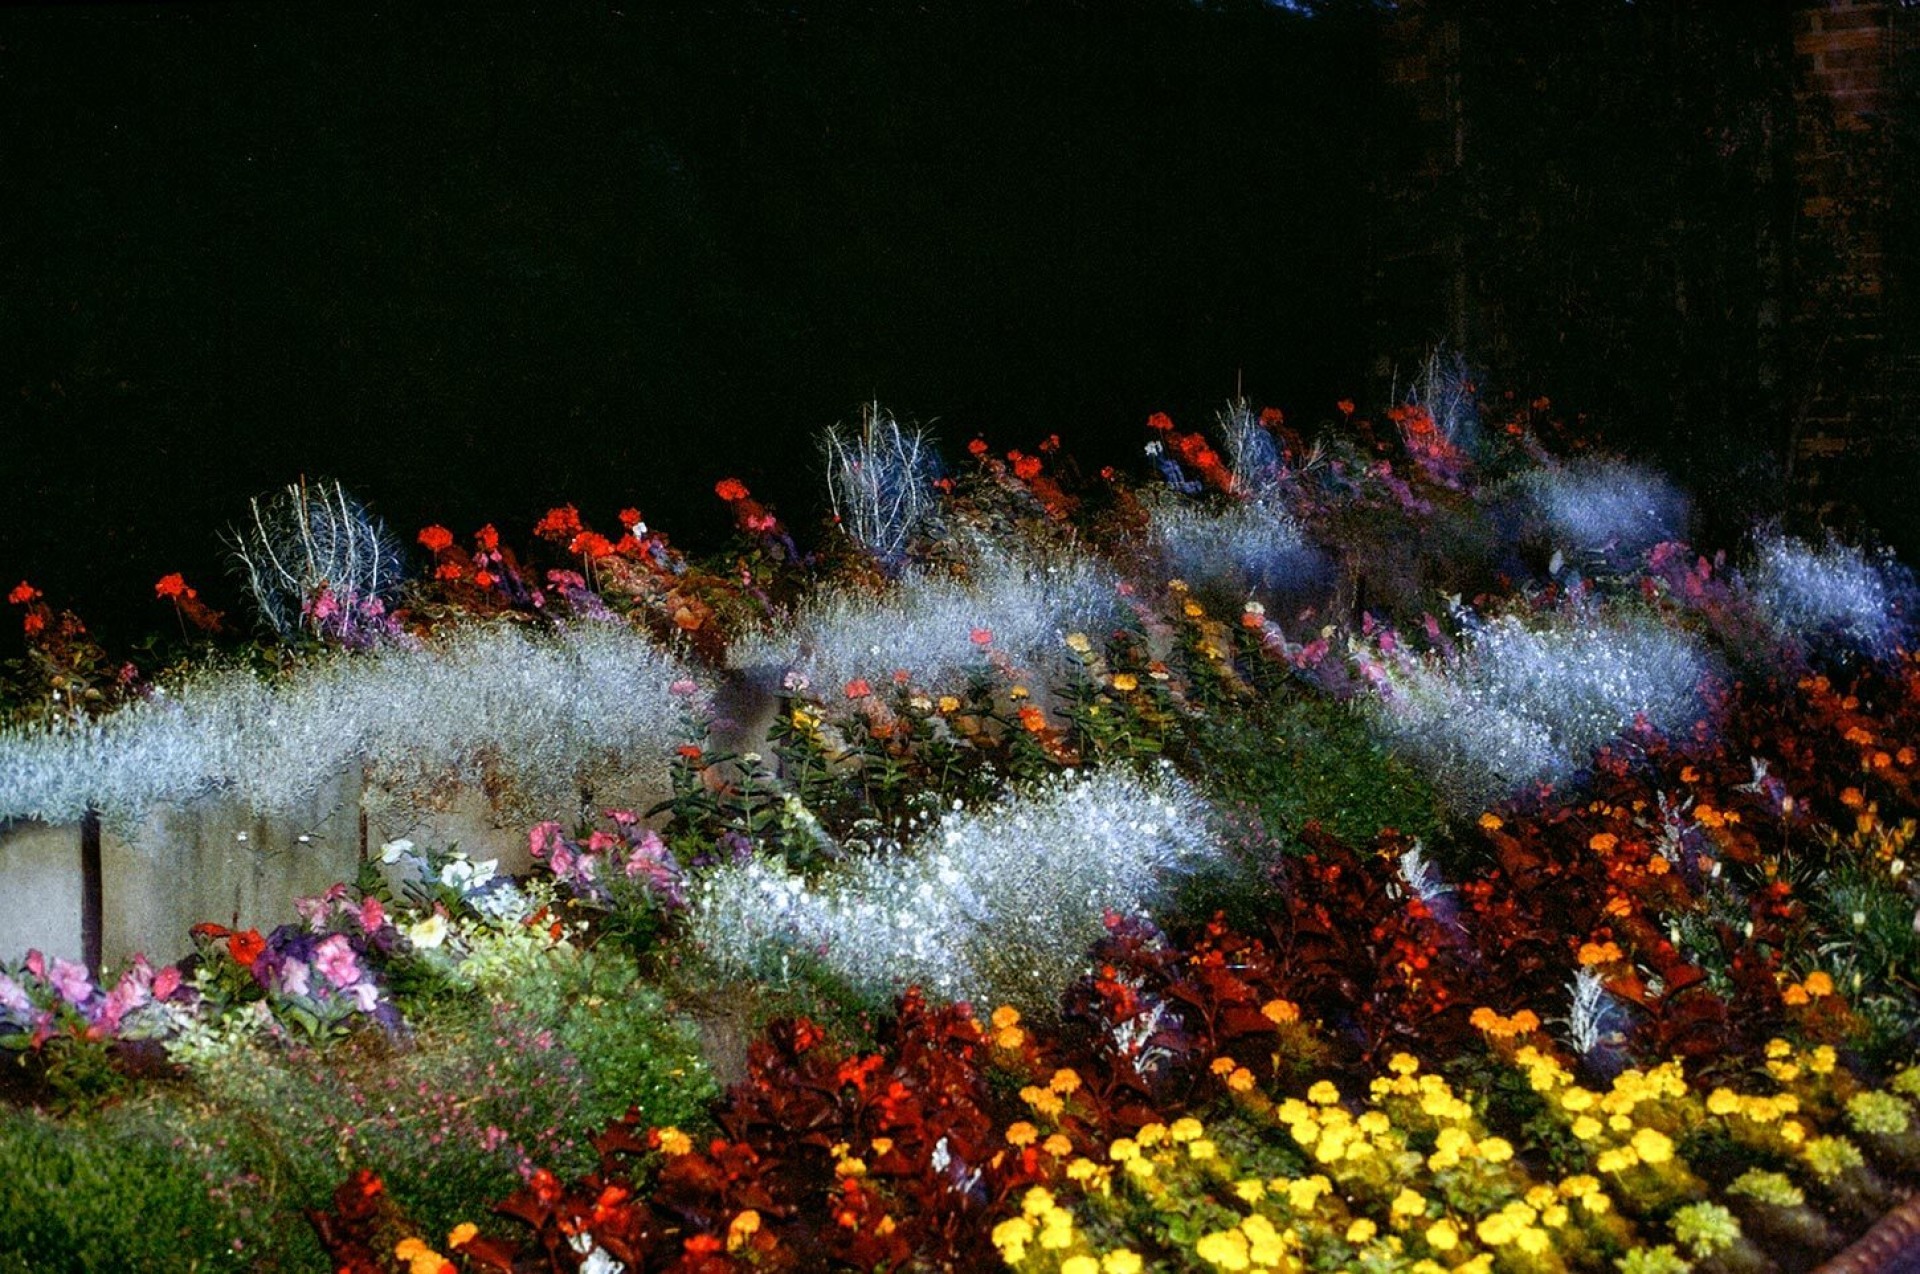 Цветочный сад Броквелл-парка, Лондон, Англия, 1989. Фотограф Крис Стил-Перкинс